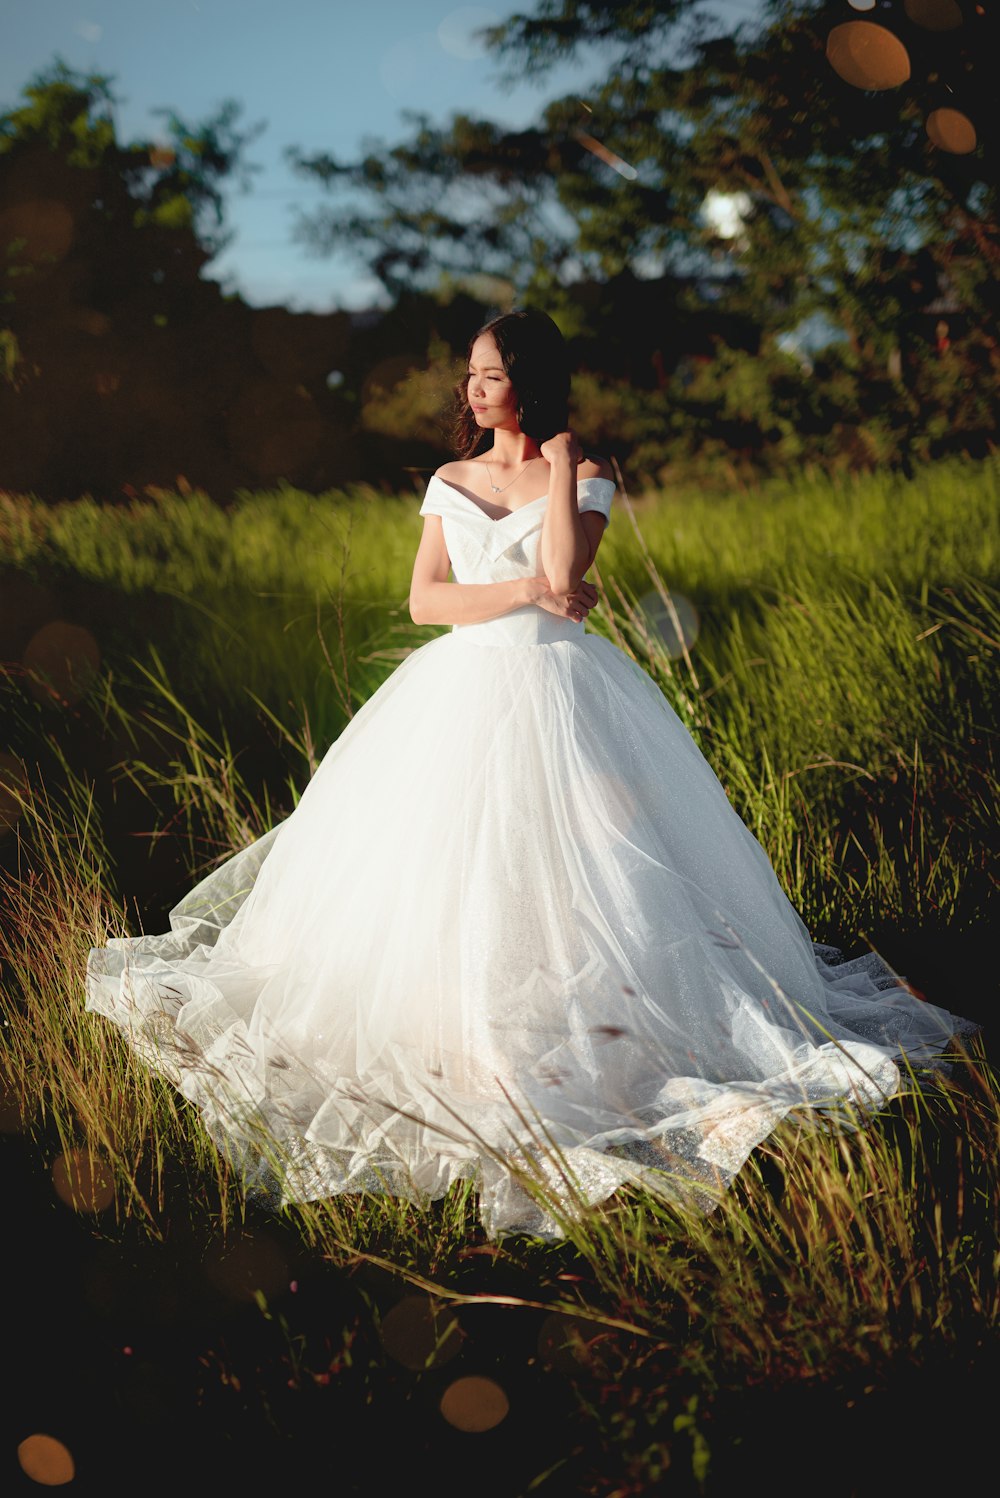 낮 동안 푸른 잔디밭에 서 있는 하얀 드레스를 입은 여자